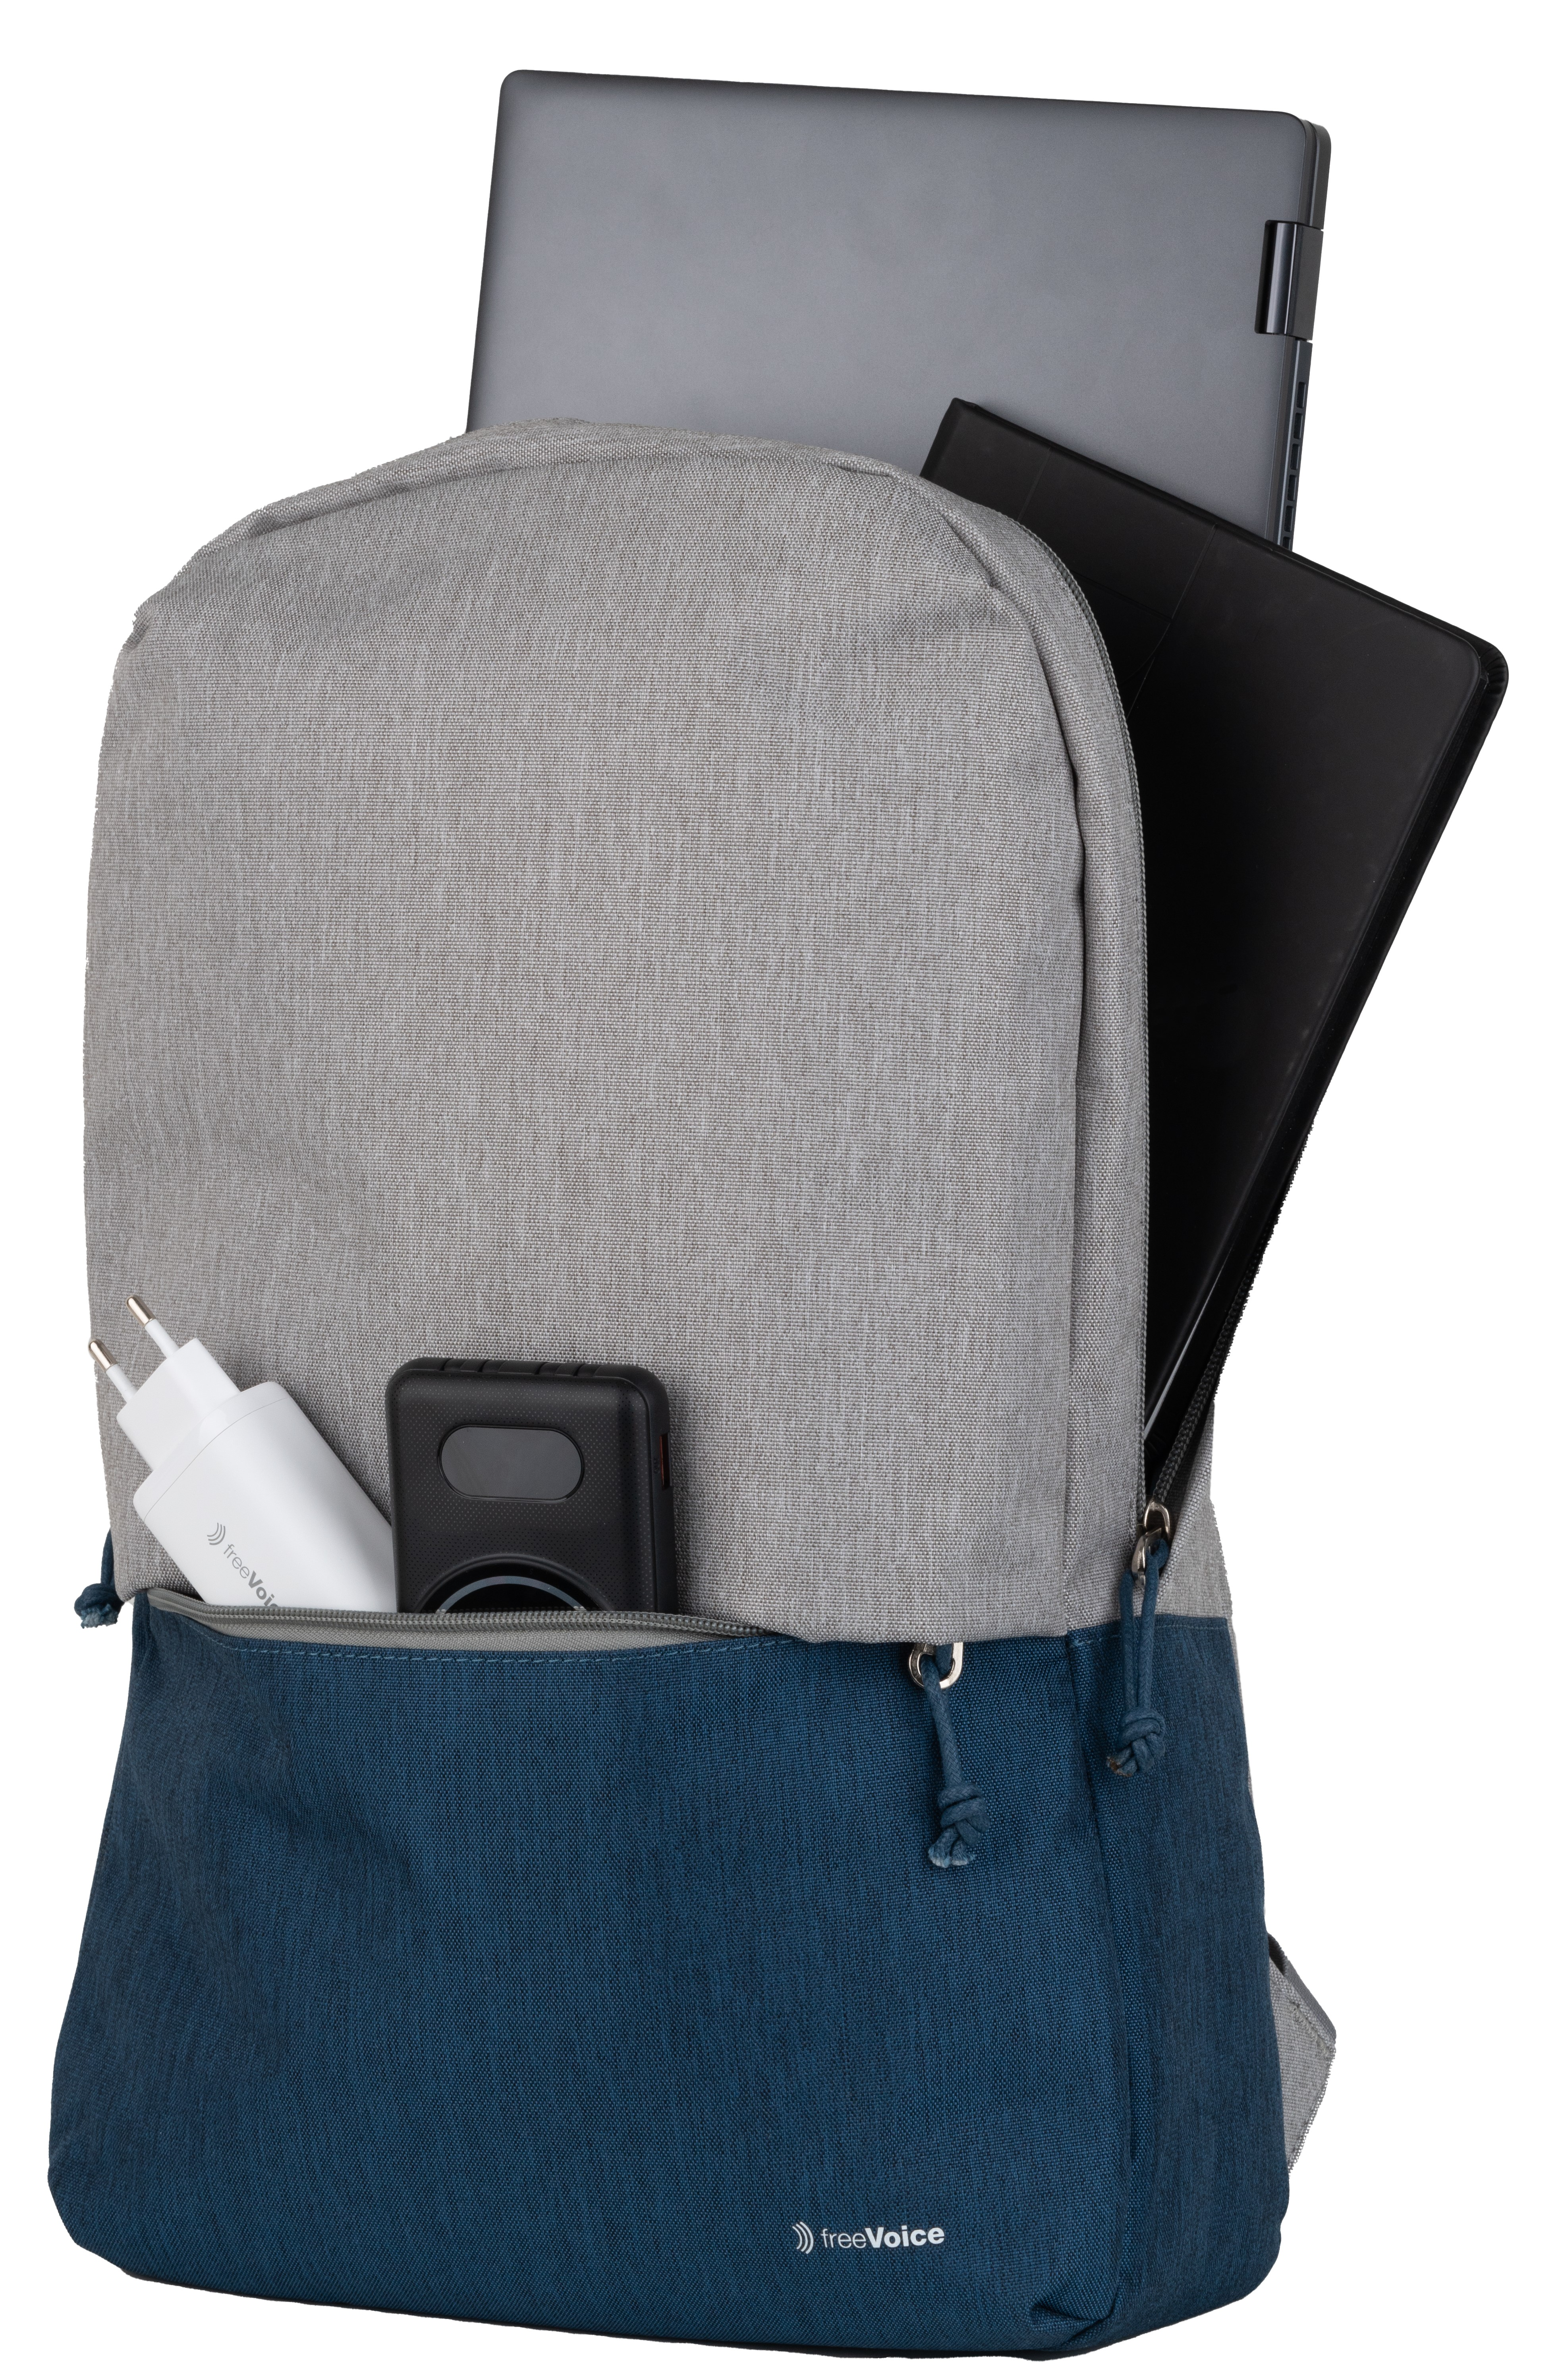 Umhängetasche Rucksack Universal Polyester, Urban für Laptop Blau Grau, FREEVOICE